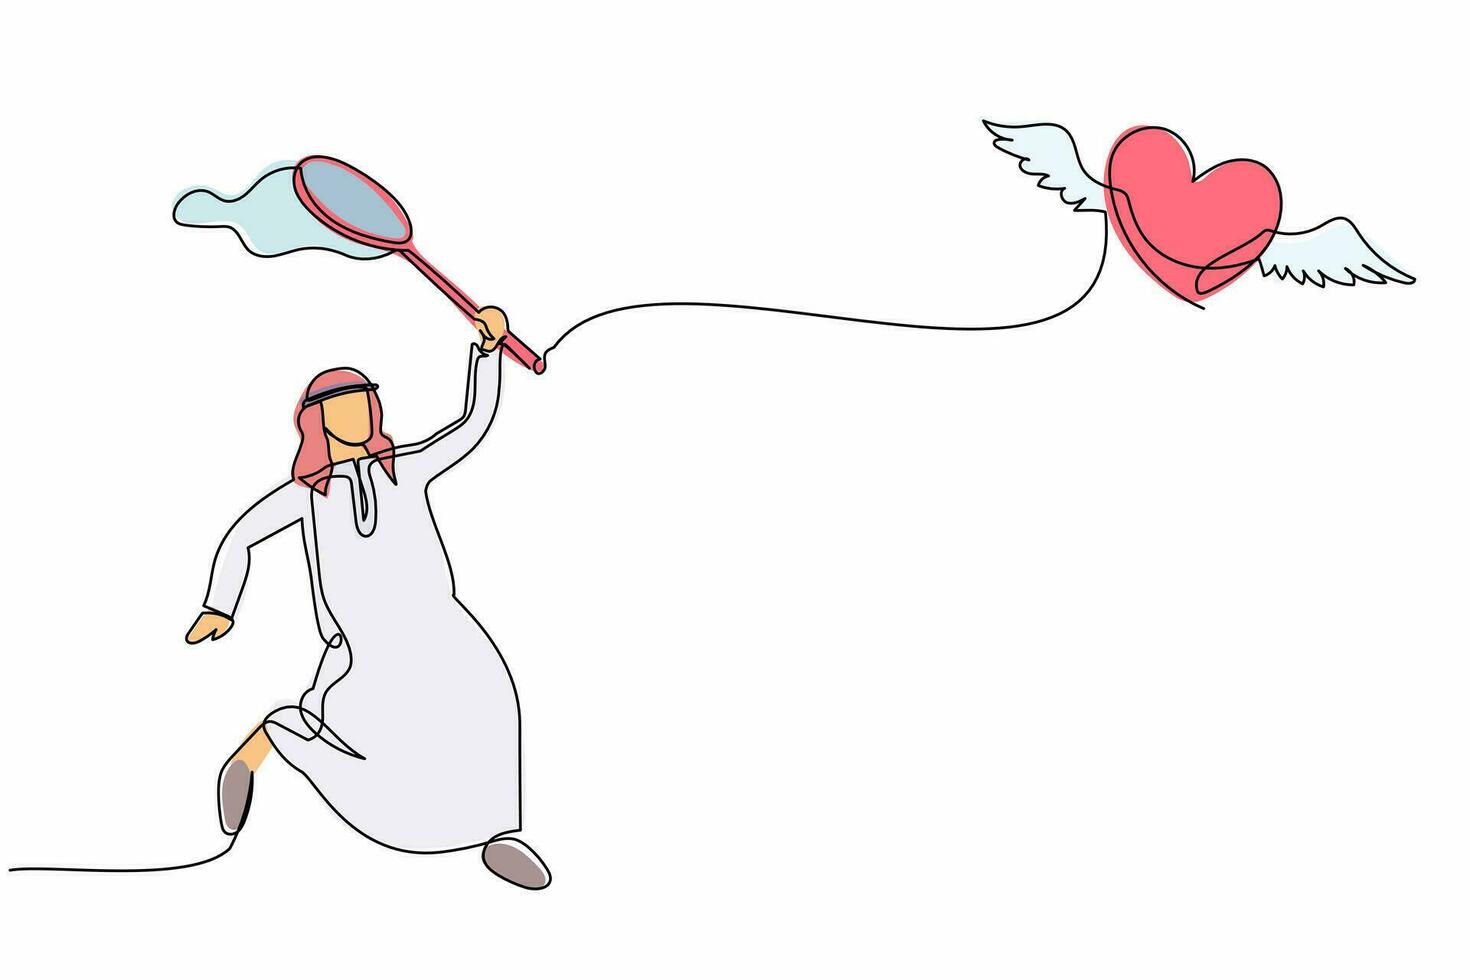 Un hombre de negocios árabe de dibujo de una sola línea intenta atrapar el corazón volador con una red de mariposas. ruptura de relación o amistad. metáfora empresarial. ilustración de vector gráfico de diseño de dibujo de línea continua